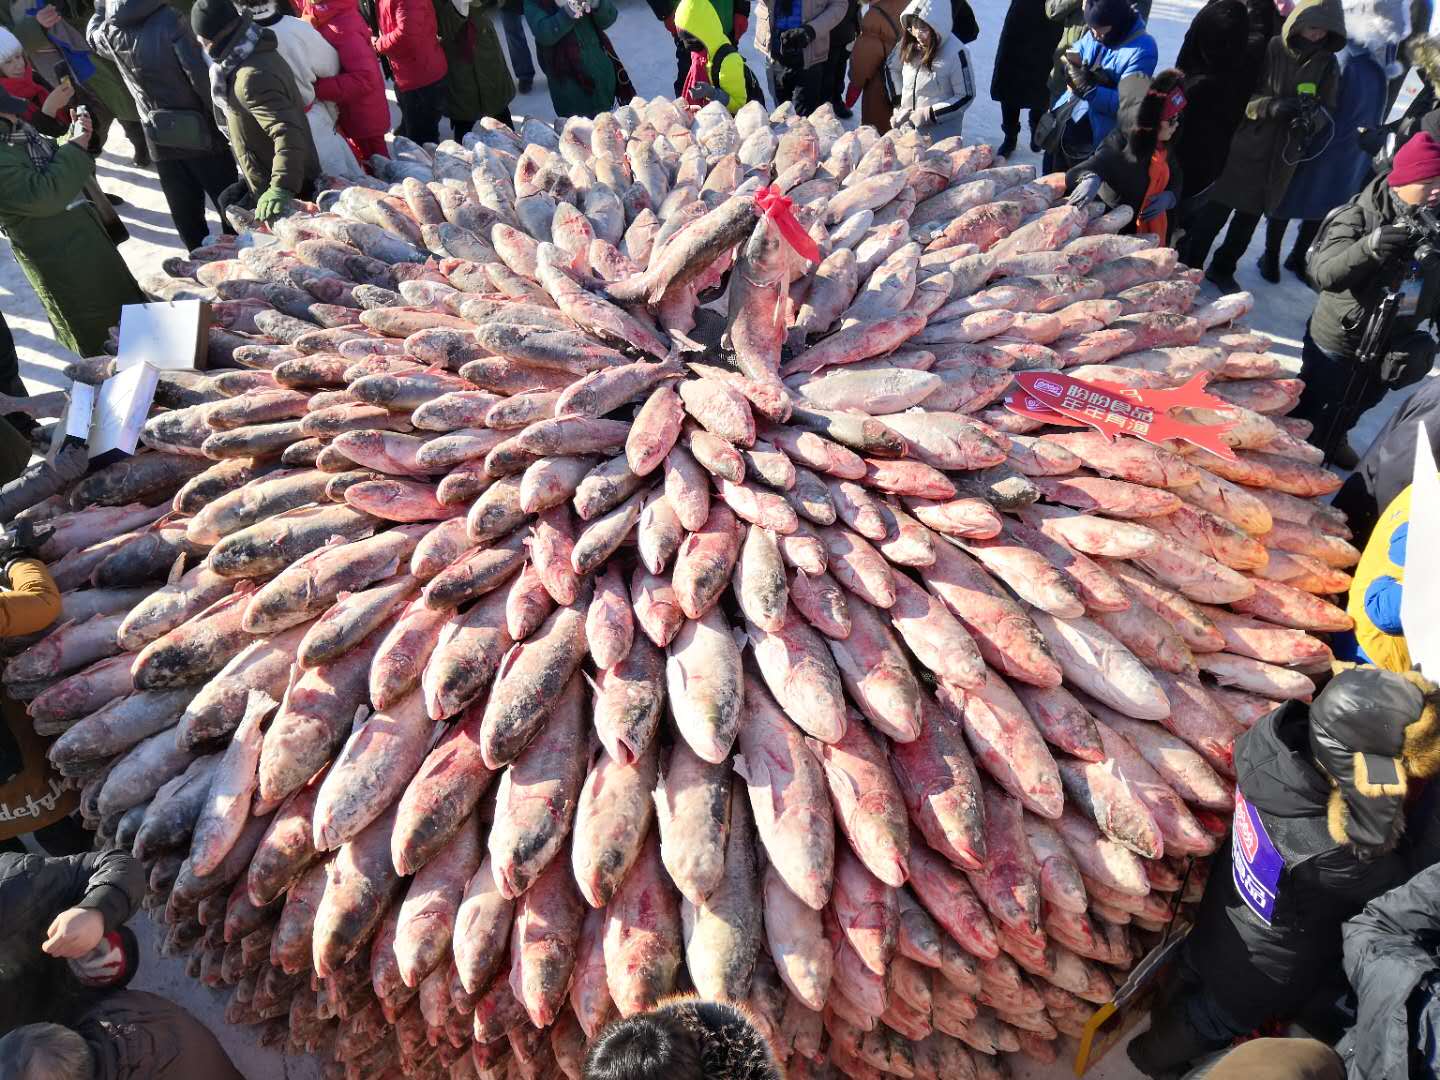 经过激烈地竞拍角逐,最终,今年的查干湖头鱼以99万9999元的拍卖成交